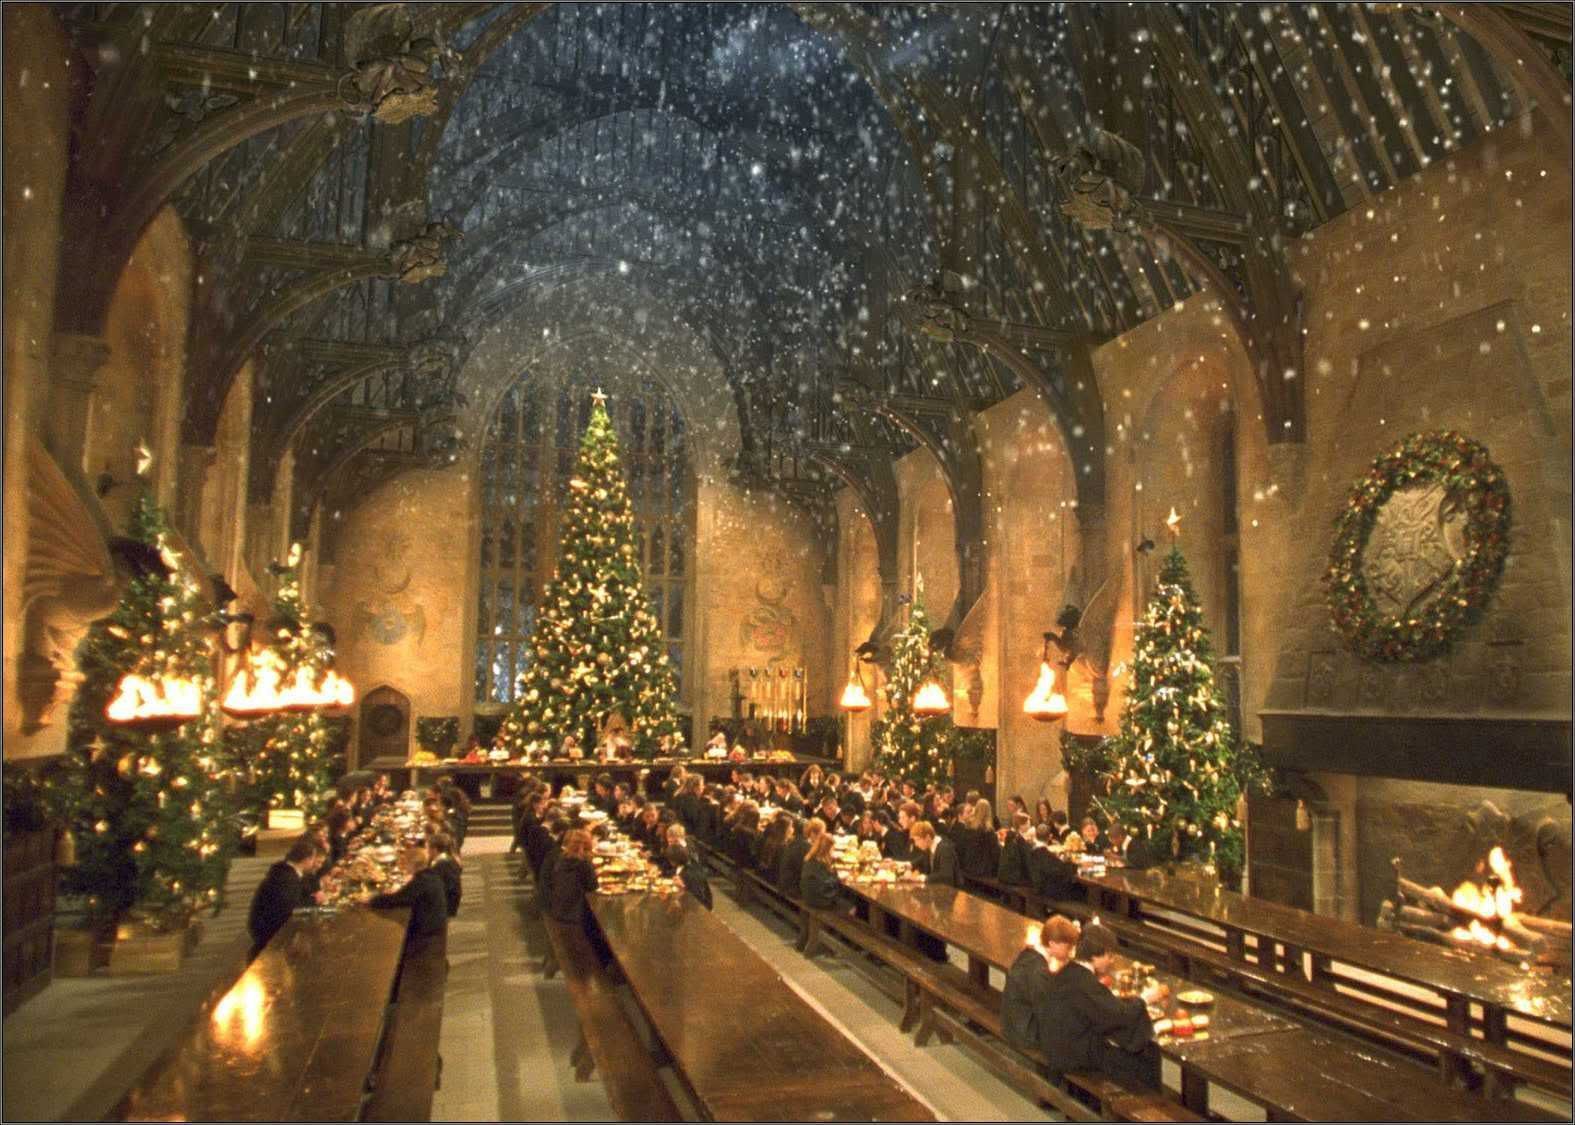 Cùng khám phá không gian Giáng sinh tuyệt đẹp tại Hogwarts với các hình nền HD đẹp lung linh trên trang WallpaperDog. Bạn sẽ thật sự bị cuốn hút bởi không khí lễ hội ấm cúng, đầy phép thuật và sự kỳ diệu ở trường phù thủy nổi tiếng này!